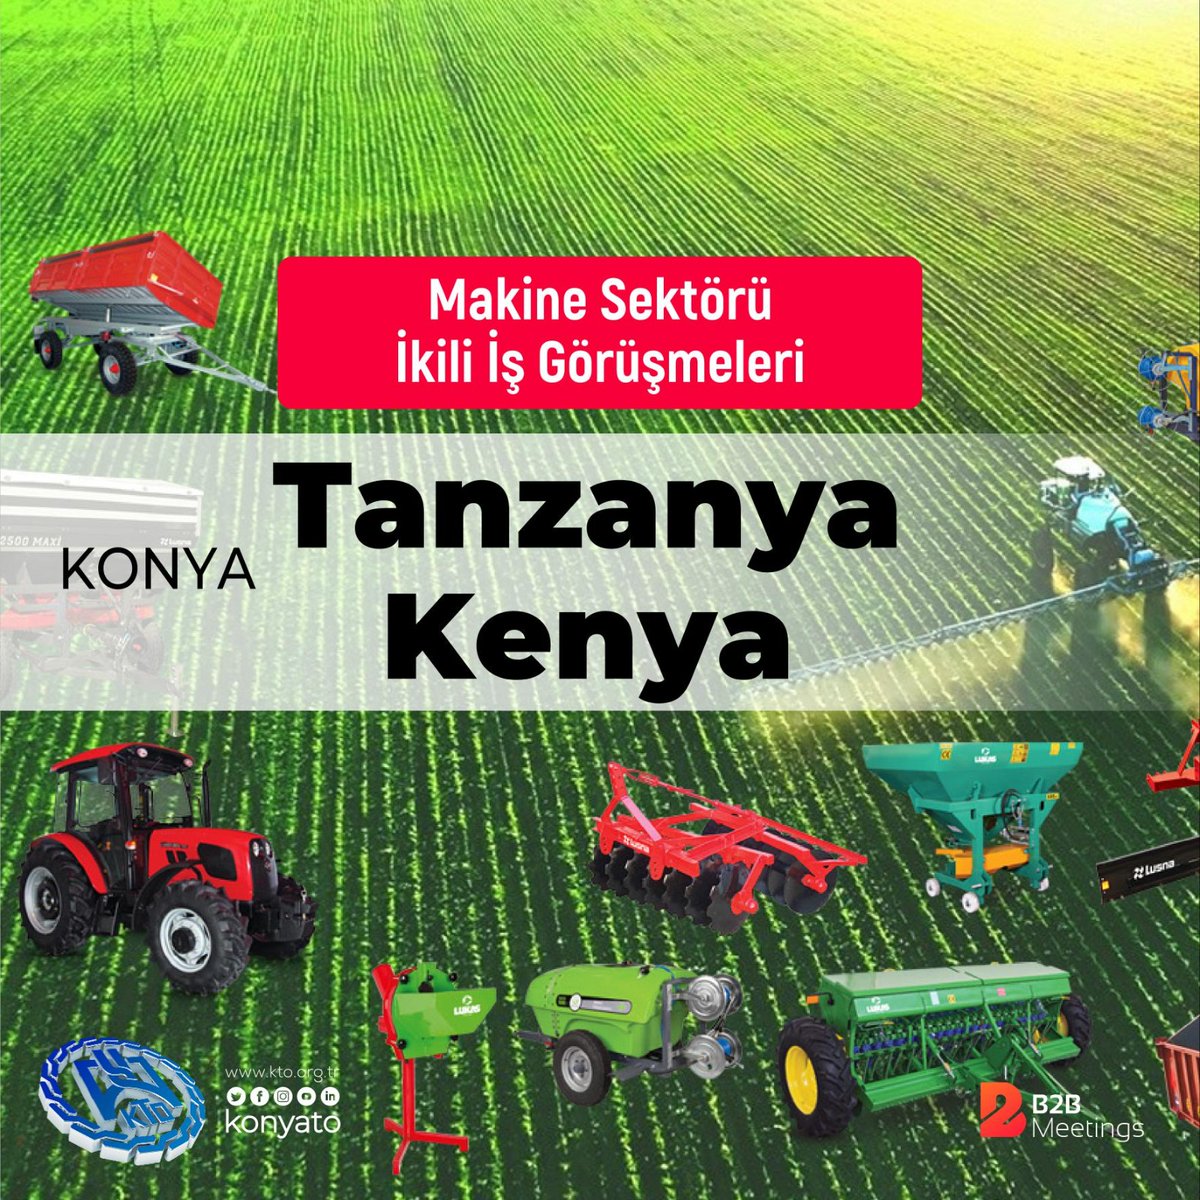 Tanzanya-Kenya; Makine sektörüne yönelik odamız tarafından 3-11 Eylül 2022 tarihinde “Online İkili İş Görüşmeleri” düzenlenecektir. #b2b @b2bmeetingstr
Listofcompany

Ayrıntılı bilgi için bit.ly/3lFiK8a